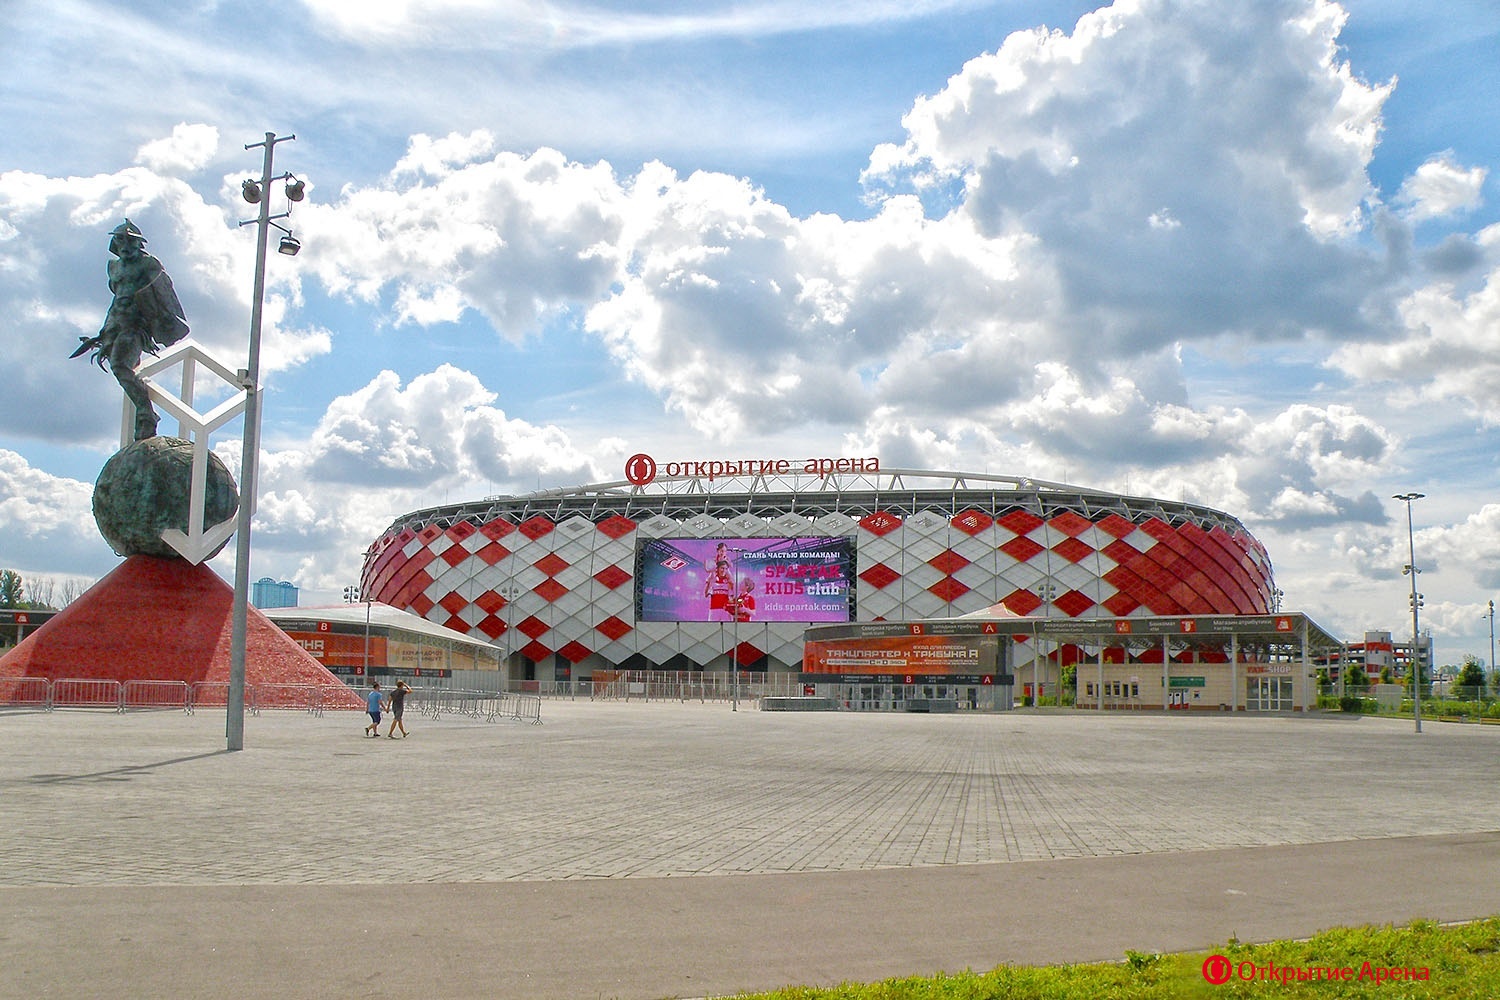 Spartak Moscow - Stadium - Otkrytie Bank Arena